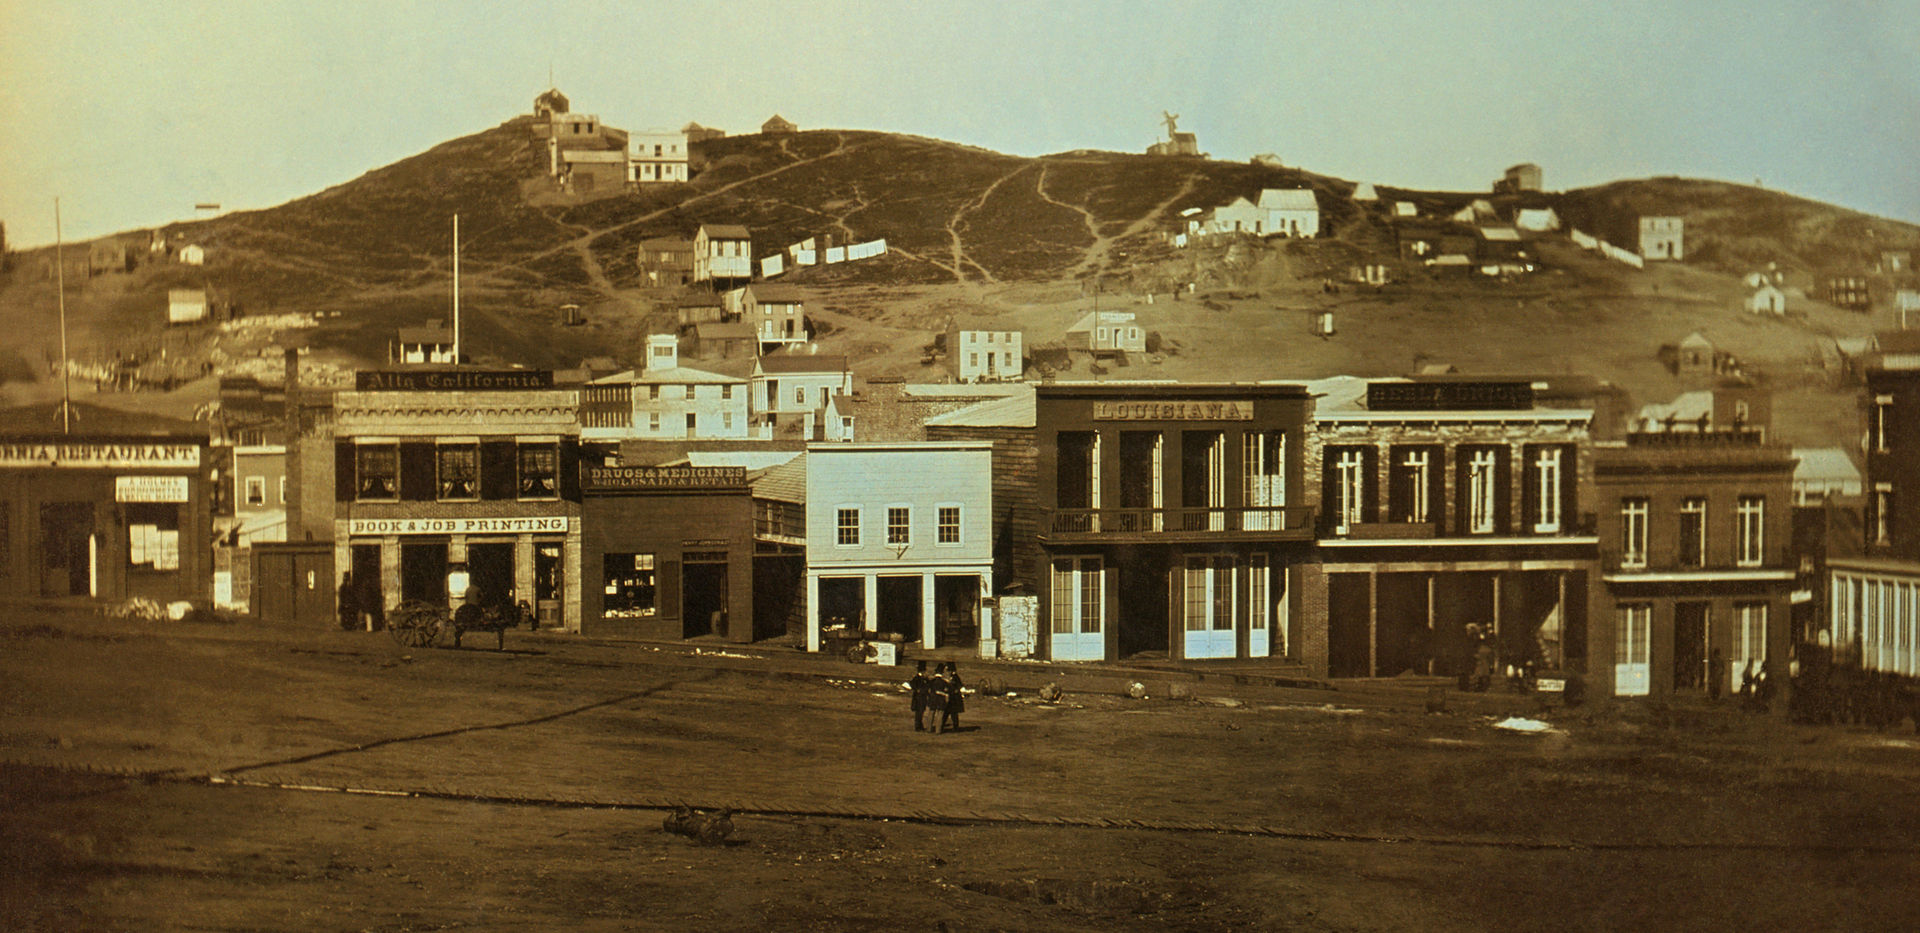 potrtsmouth in 1850 -3.jpg